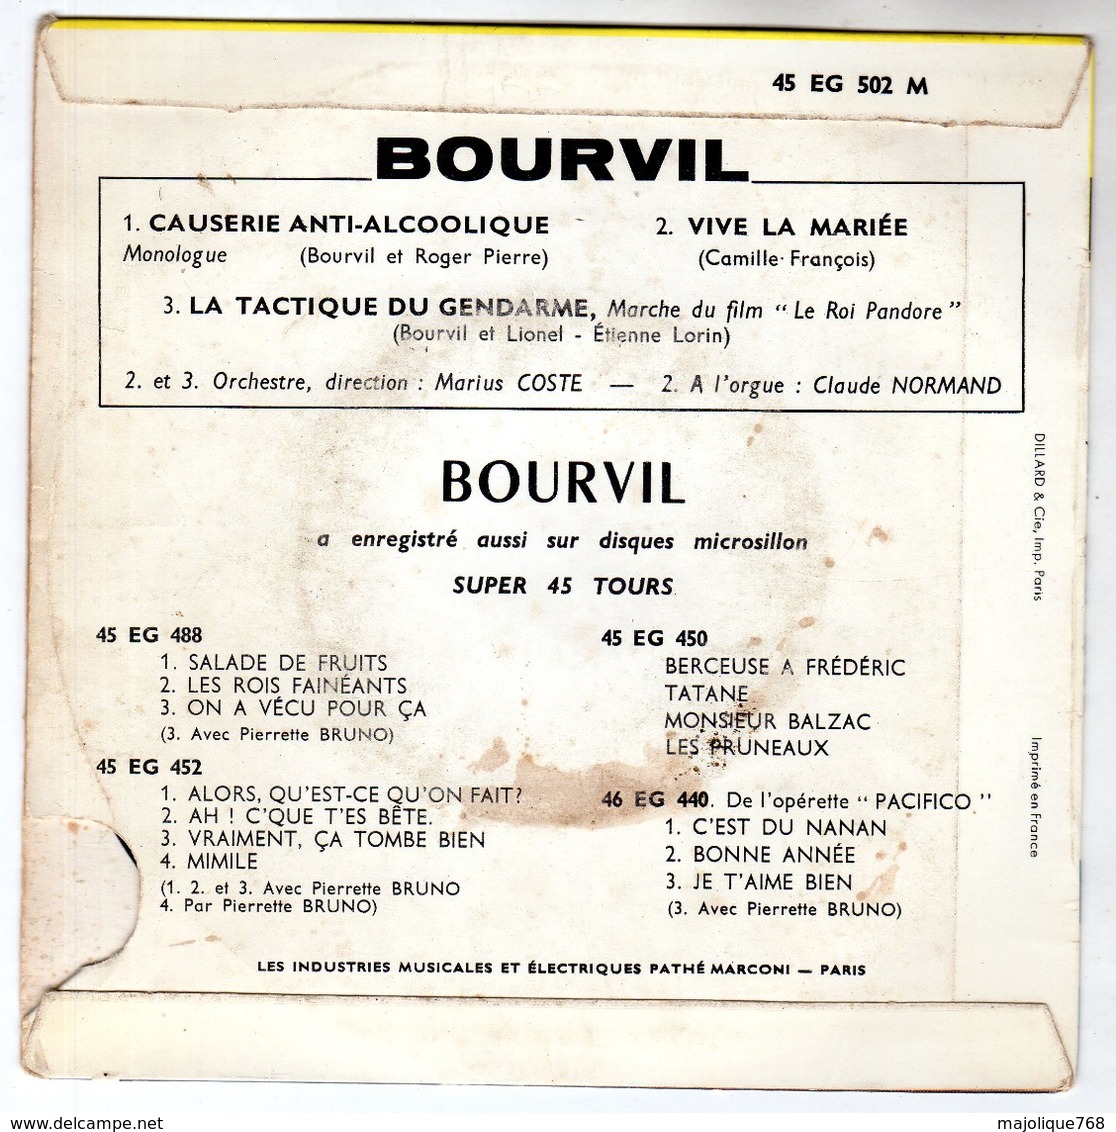 Bourvil - Causerie Anti-alcoolique - Vive La Mariée - La Tactique Du Gendarme - Pathé  45 EG 502 - 1960 - Humor, Cabaret